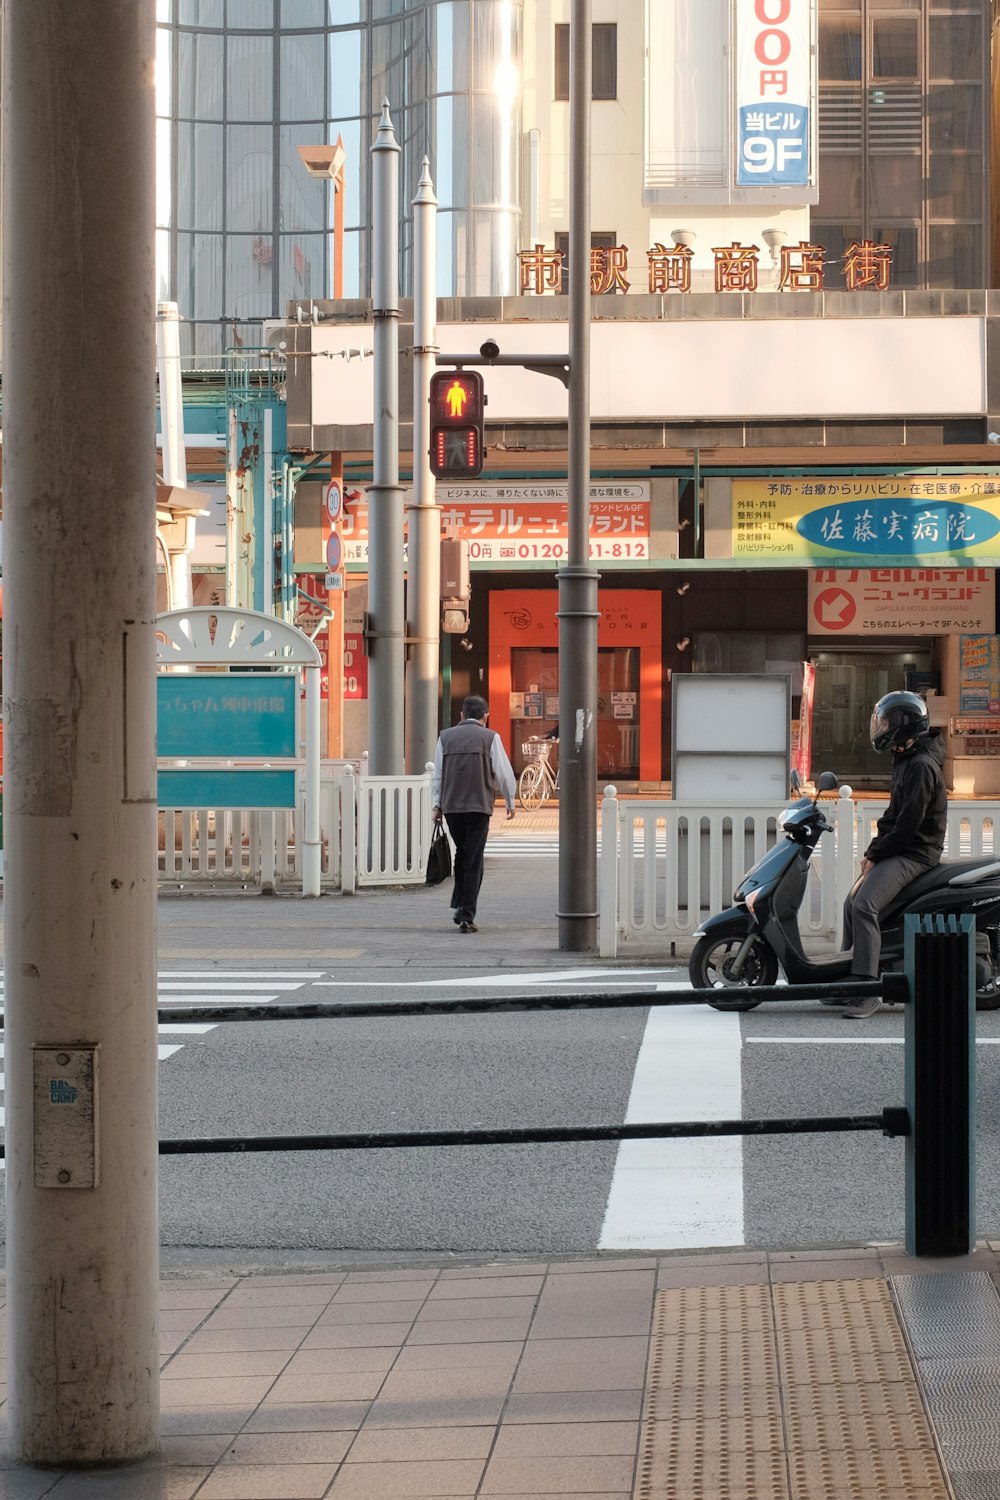 Mann in schwarzer Jacke und schwarzer Hose fährt tagsüber auf einem schwarzen Motorrad auf der Straße